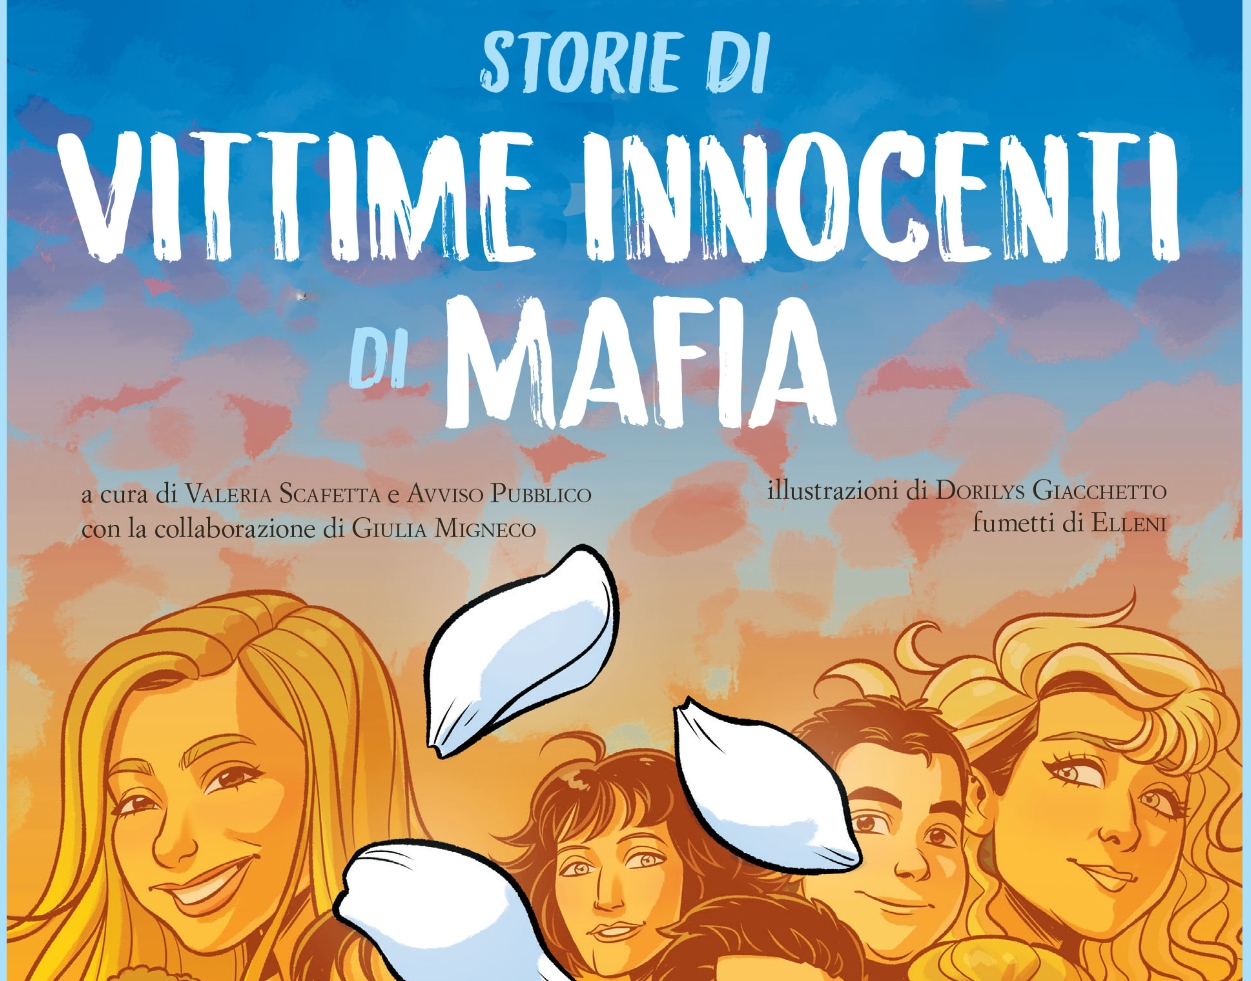 Storie di vittime innocenti di mafia